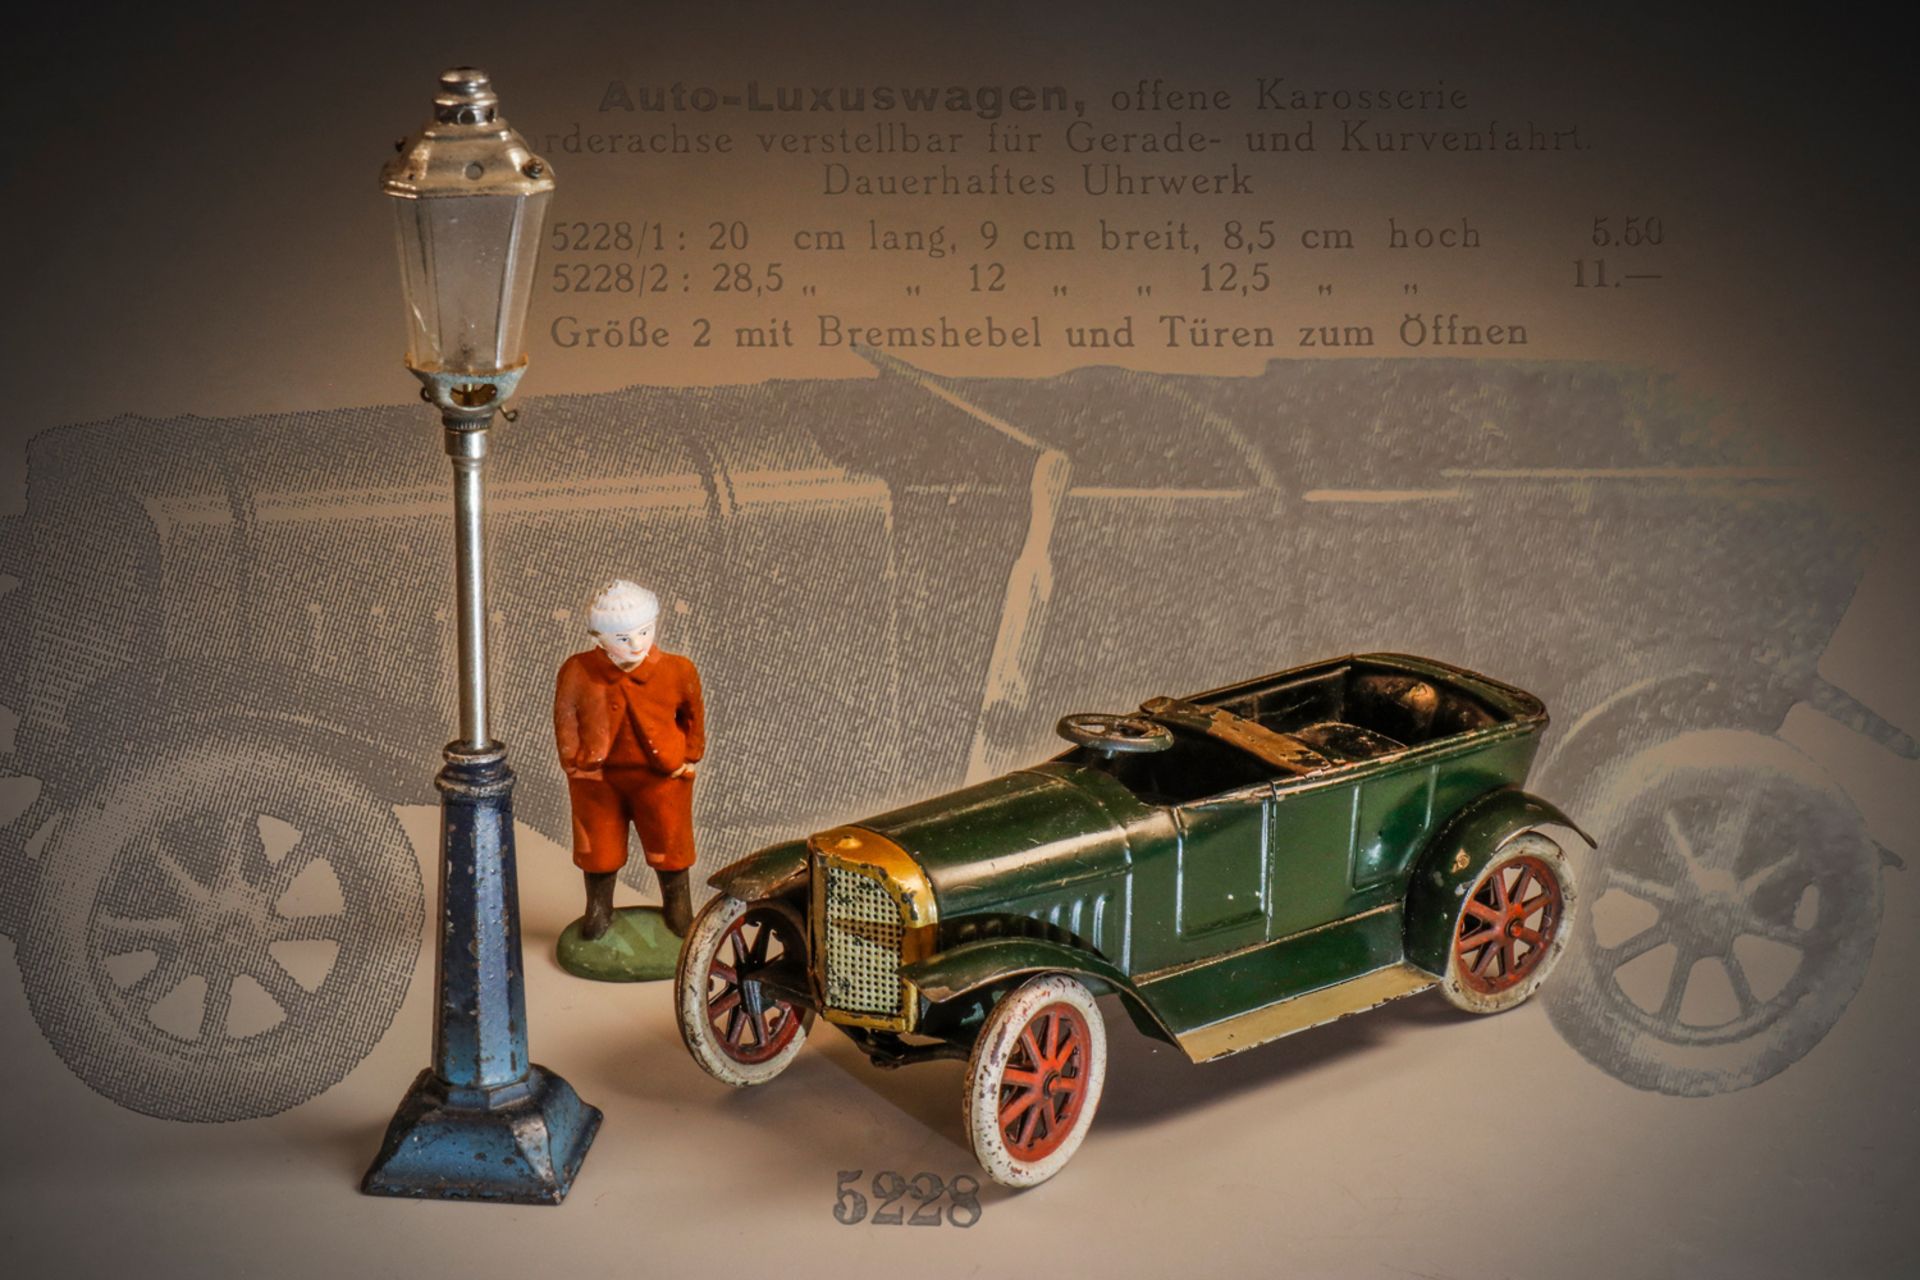 Märklin offener Viersitzer 5228/1, um 1925, racing green, handlackiert, Uhrwerk intakt, Lenkung